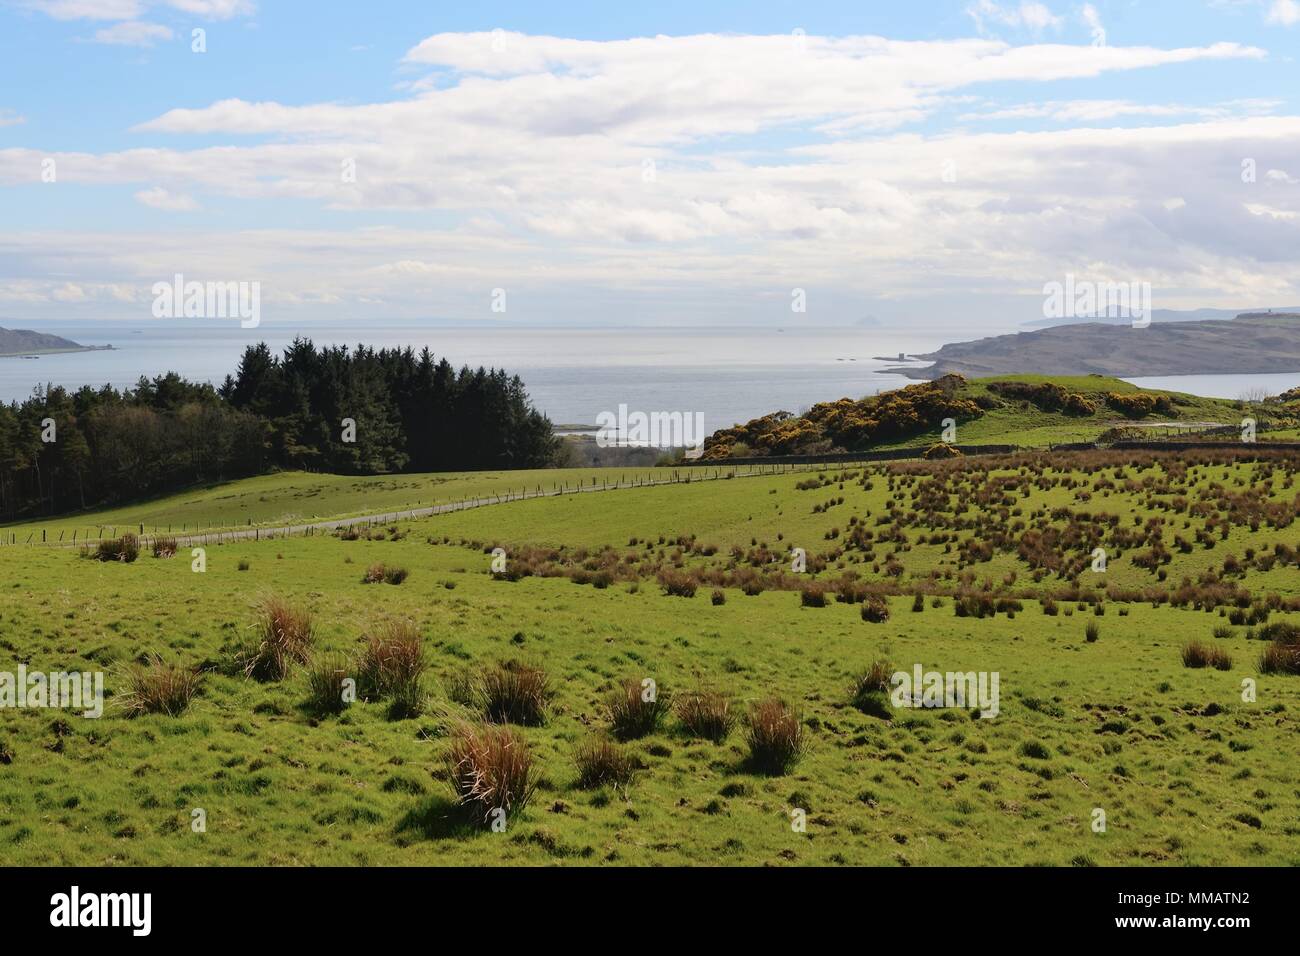 Vista desde la cumbre de la isla de Cumbrae domina el estuario del Clyde, Escocia, Reino Unido Foto de stock